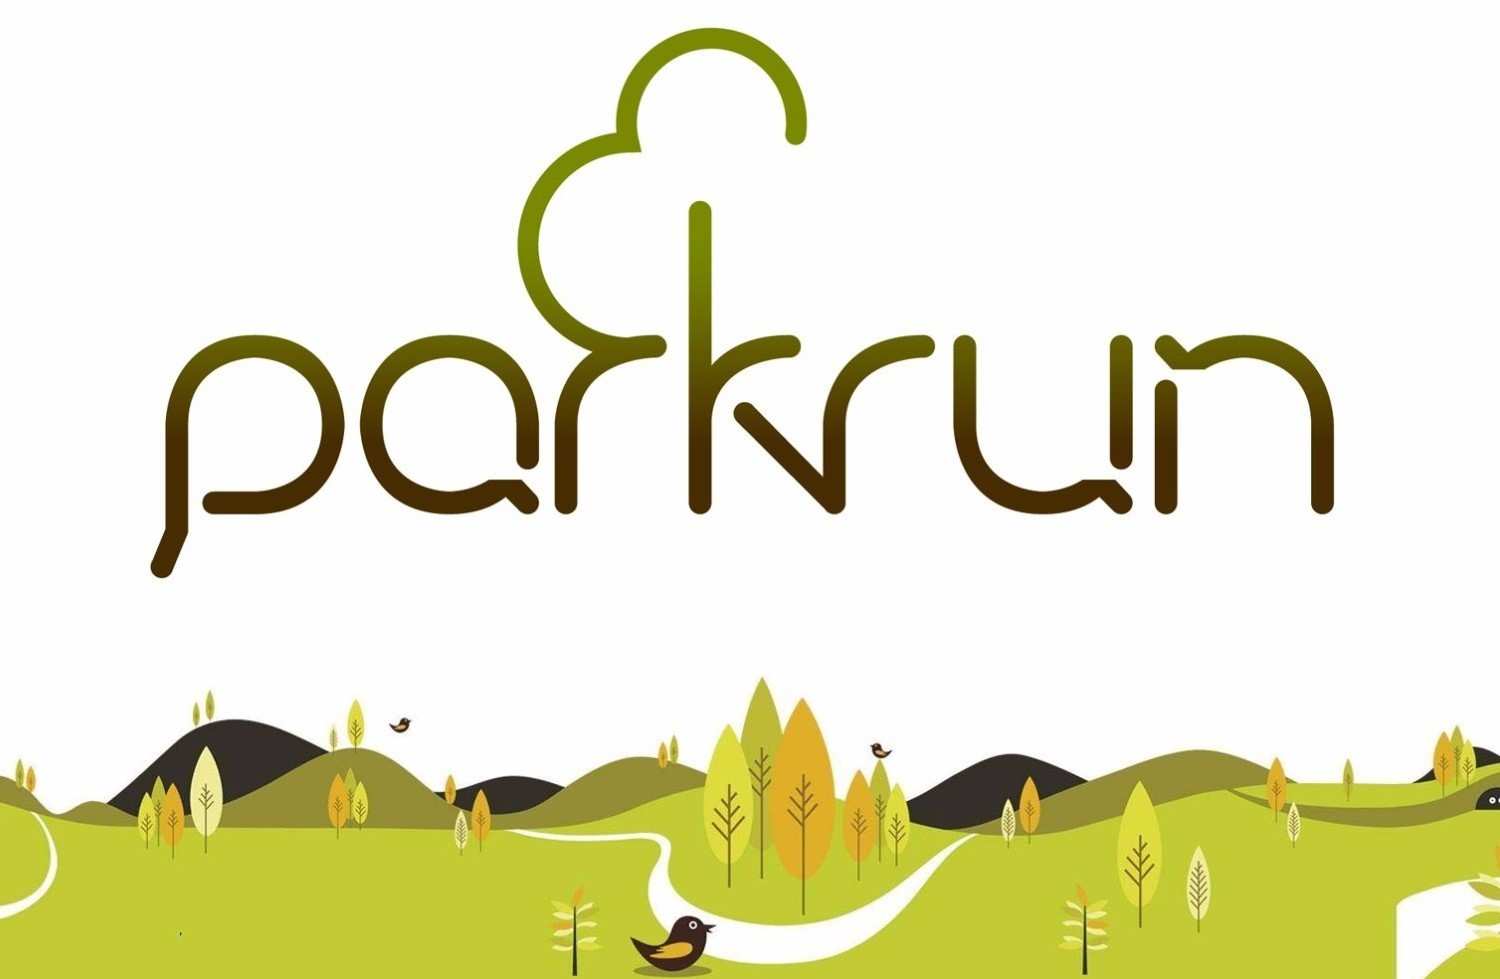 Орск parkrun - еженедельный забег в парке Строителей